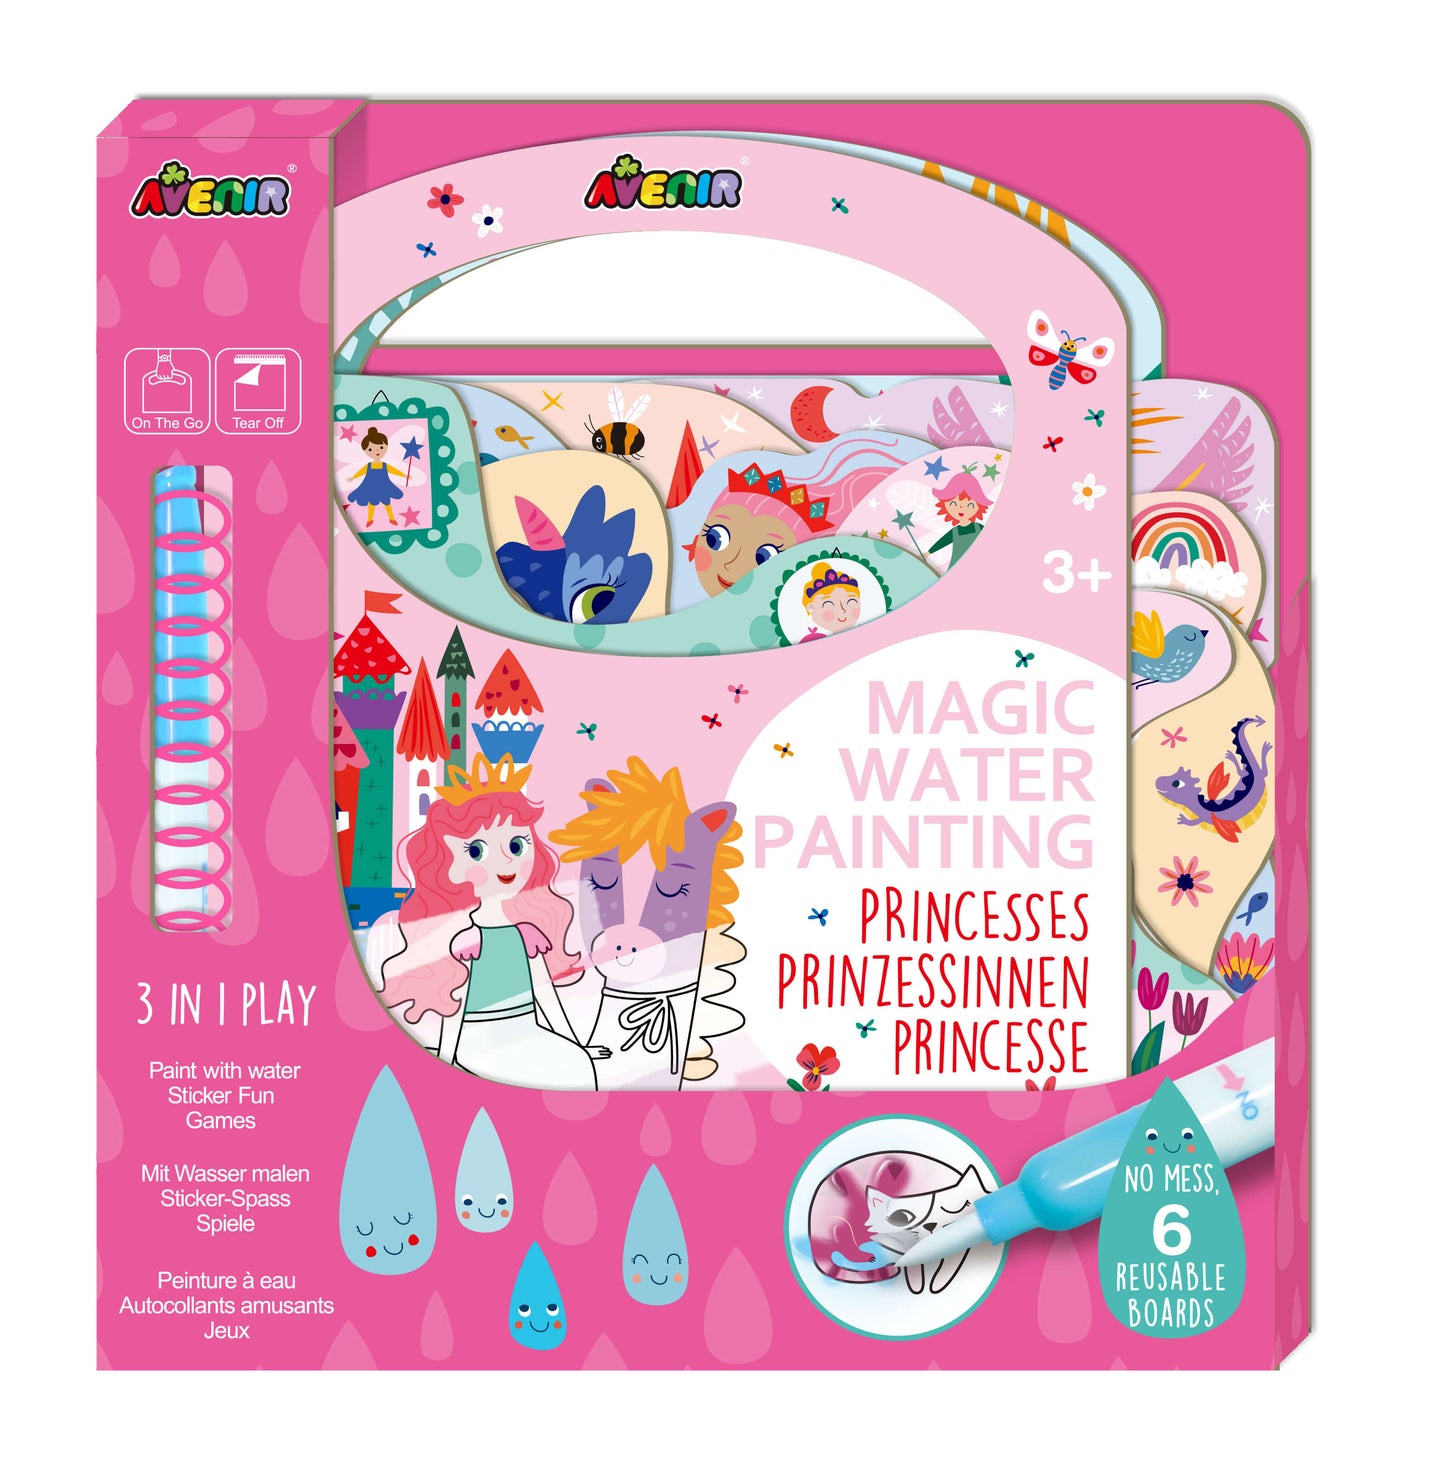 Magic Water Painting Princesses